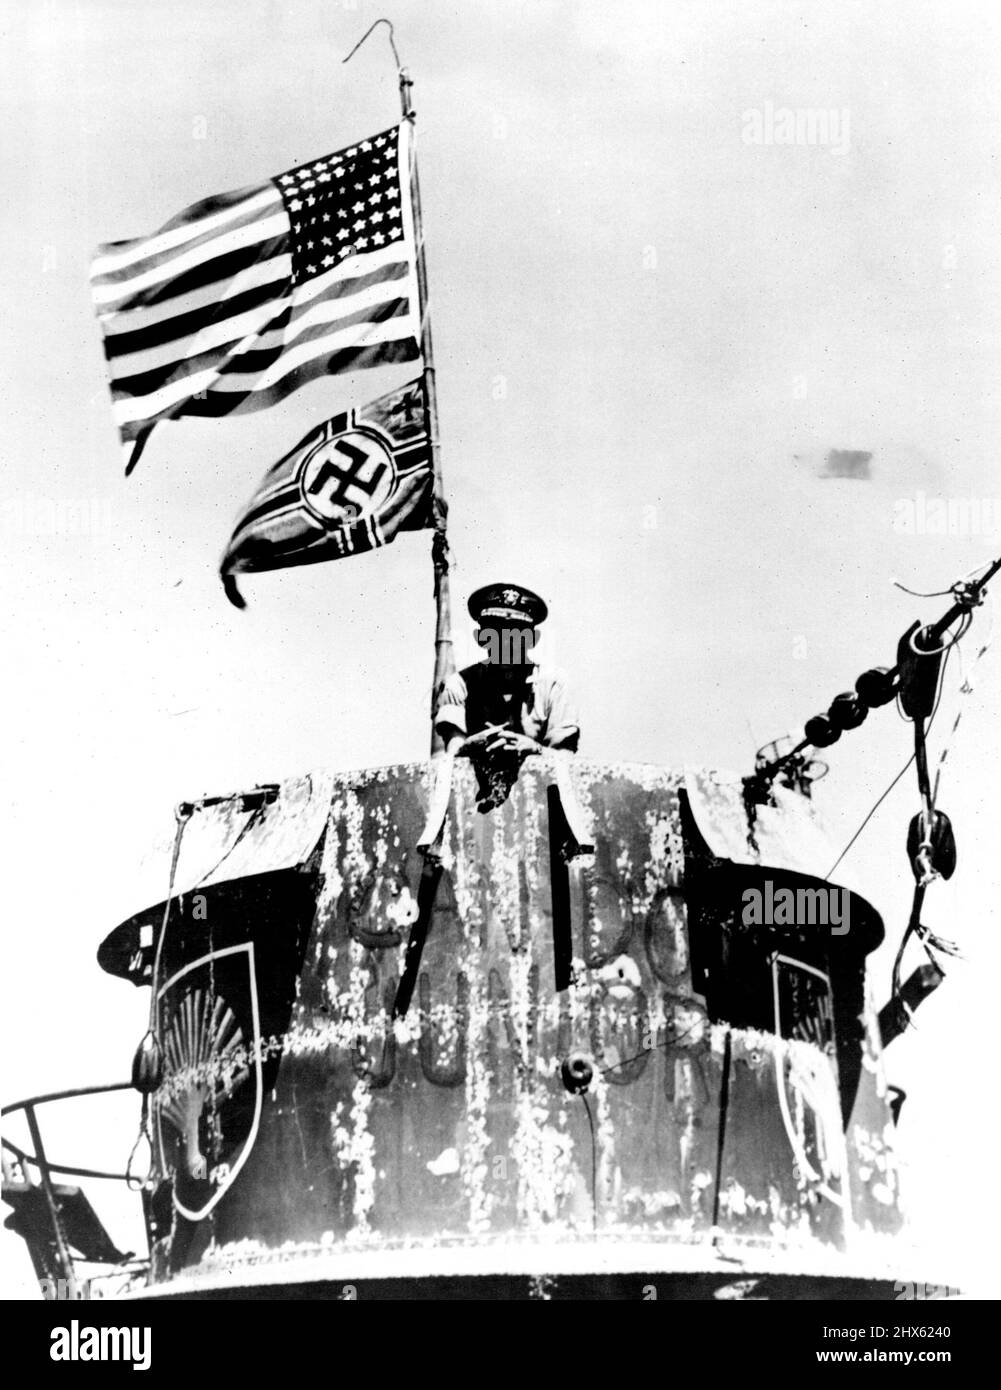 Navires de la marine américaine au large de l'Afrique de l'Ouest - Capitaine Daniel V. Gallery, commandant du groupe de travail américain qui a capturé l'U-505, est photographié sur la tour de conning de l'embarcation sous-marine allemande. Conformément à la coutume navale, les couleurs américaines survolent l'emblème nazi qui indique la nationalité du navire capturé. 22 juin 1945. (Photo par U.S. Office of War information Picture).;États-Unis Navires de la Marine au large de l'Afrique de l'Ouest - Capitaine Daniel V. Gallery, commandant du groupe de travail américain qui a capturé l'U-505, est Ph Banque D'Images